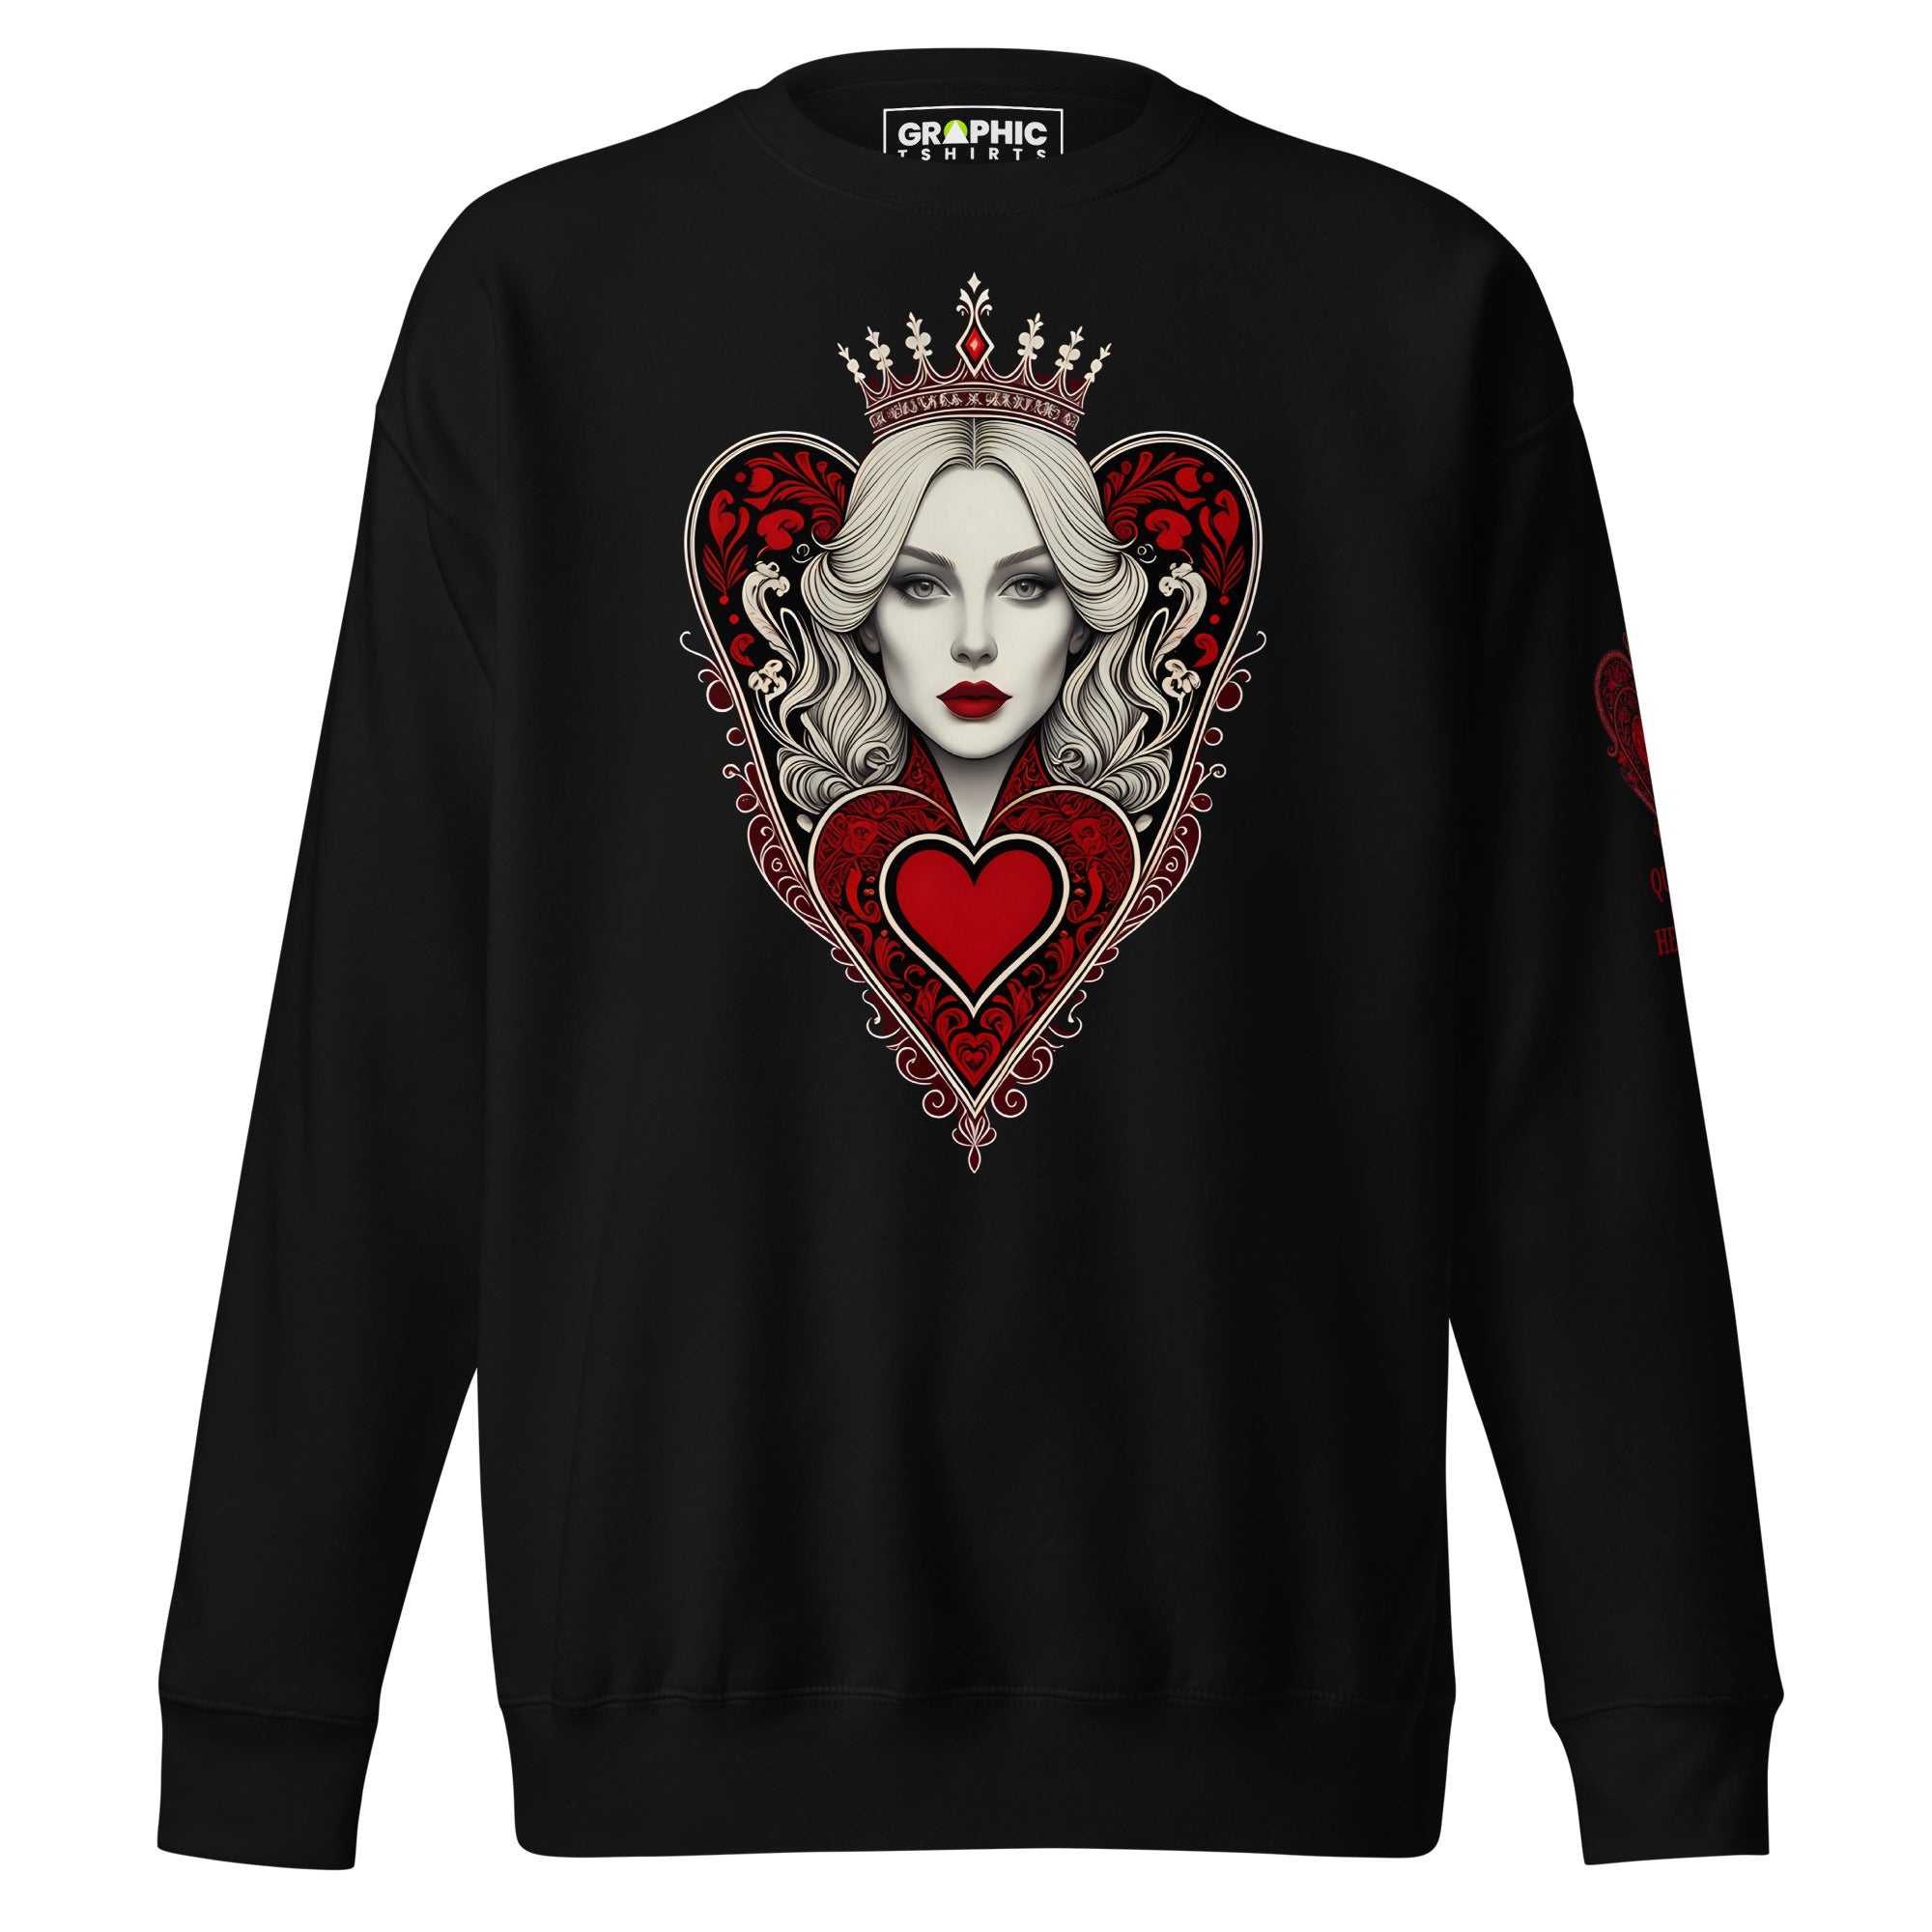 Unisex Premium Sweatshirt - Queen Of Hearts Series v.33